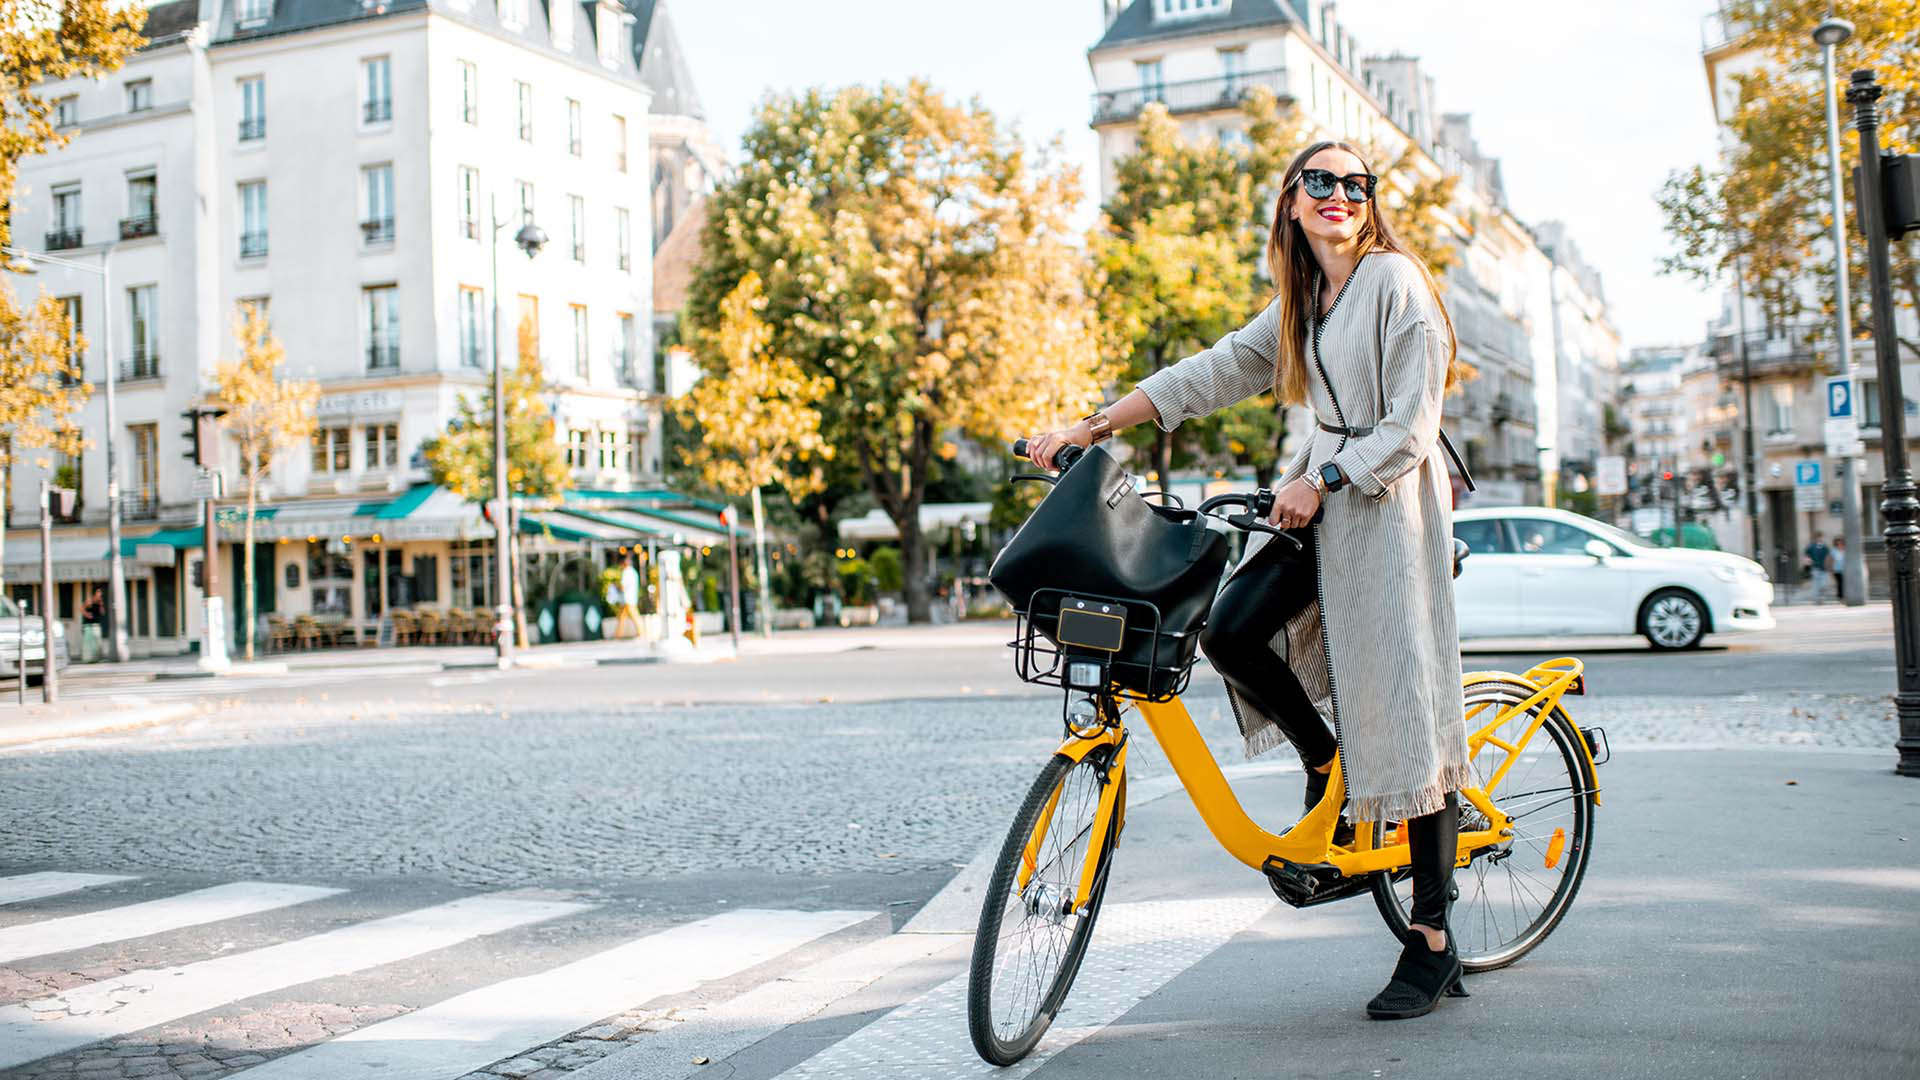 امرأة ترتدي نظارات شمسية وتقود الدراجة في باريس، فرنسا